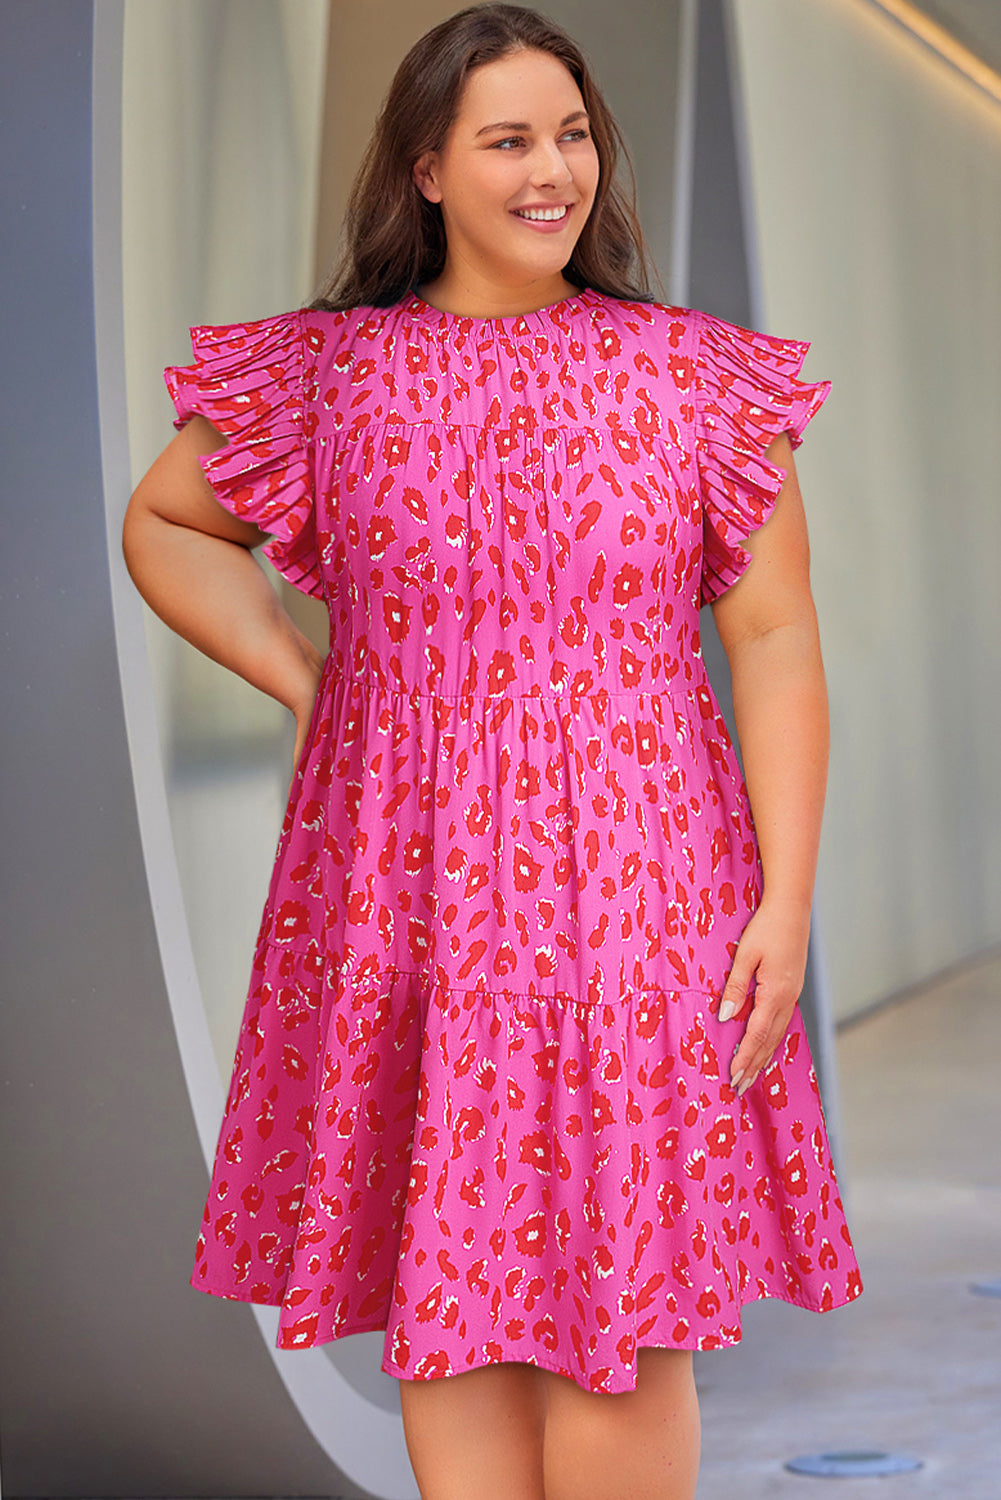 Rose Leopard Print Frilled Sleeveless Plus Size Mini Dress Plus Size Dresses JT's Designer Fashion